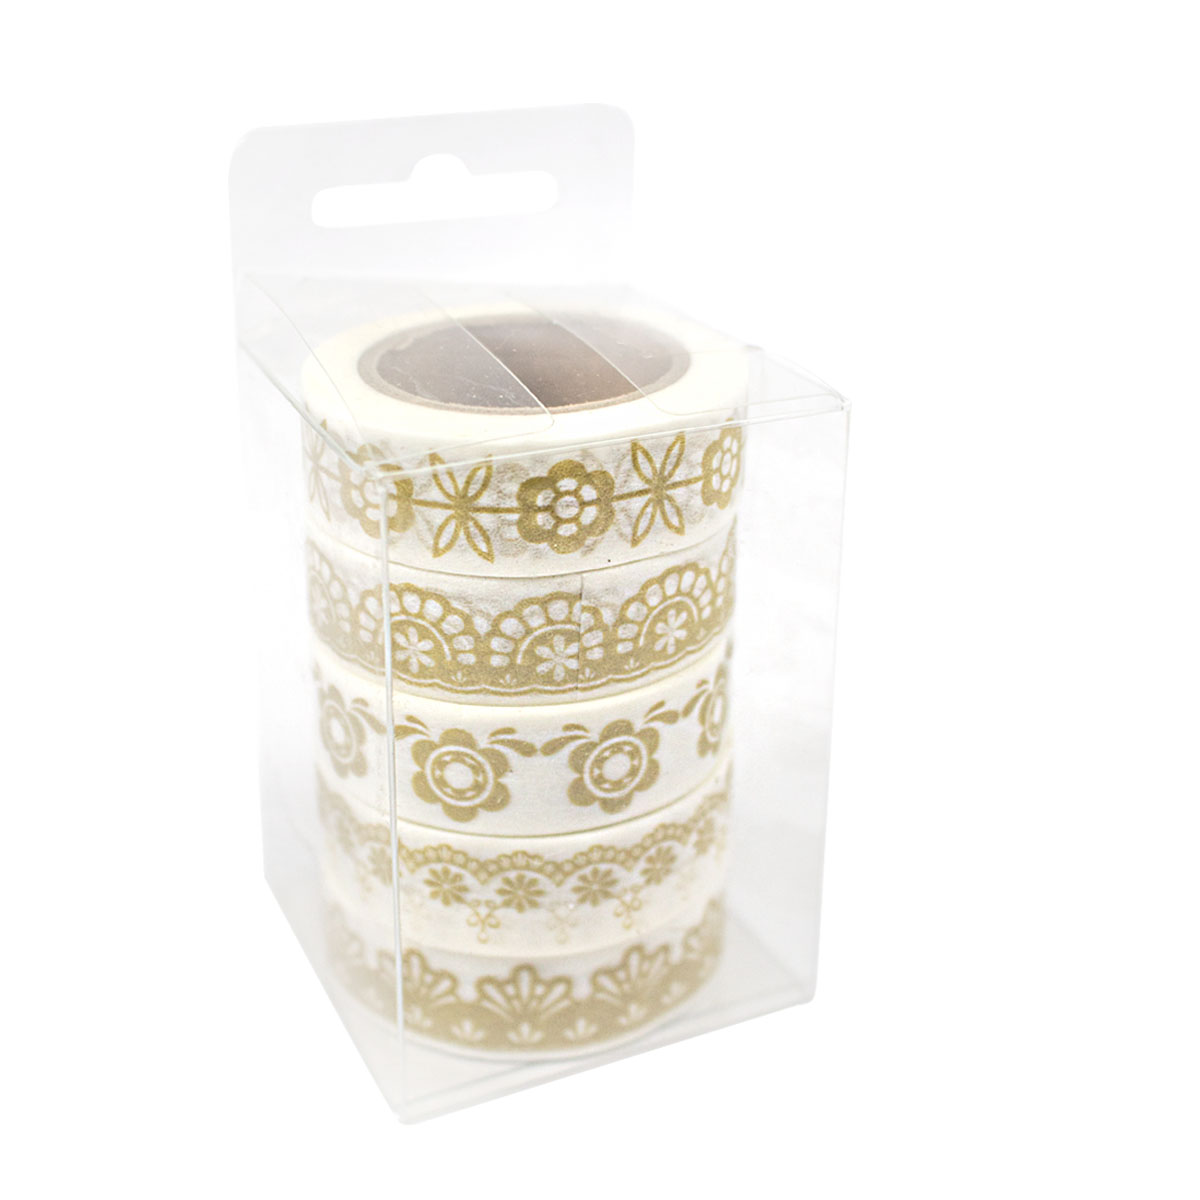 Set de 5 Washi Tapes (Cinta adhesiva decorativa) con Diseños Dorados MPC35